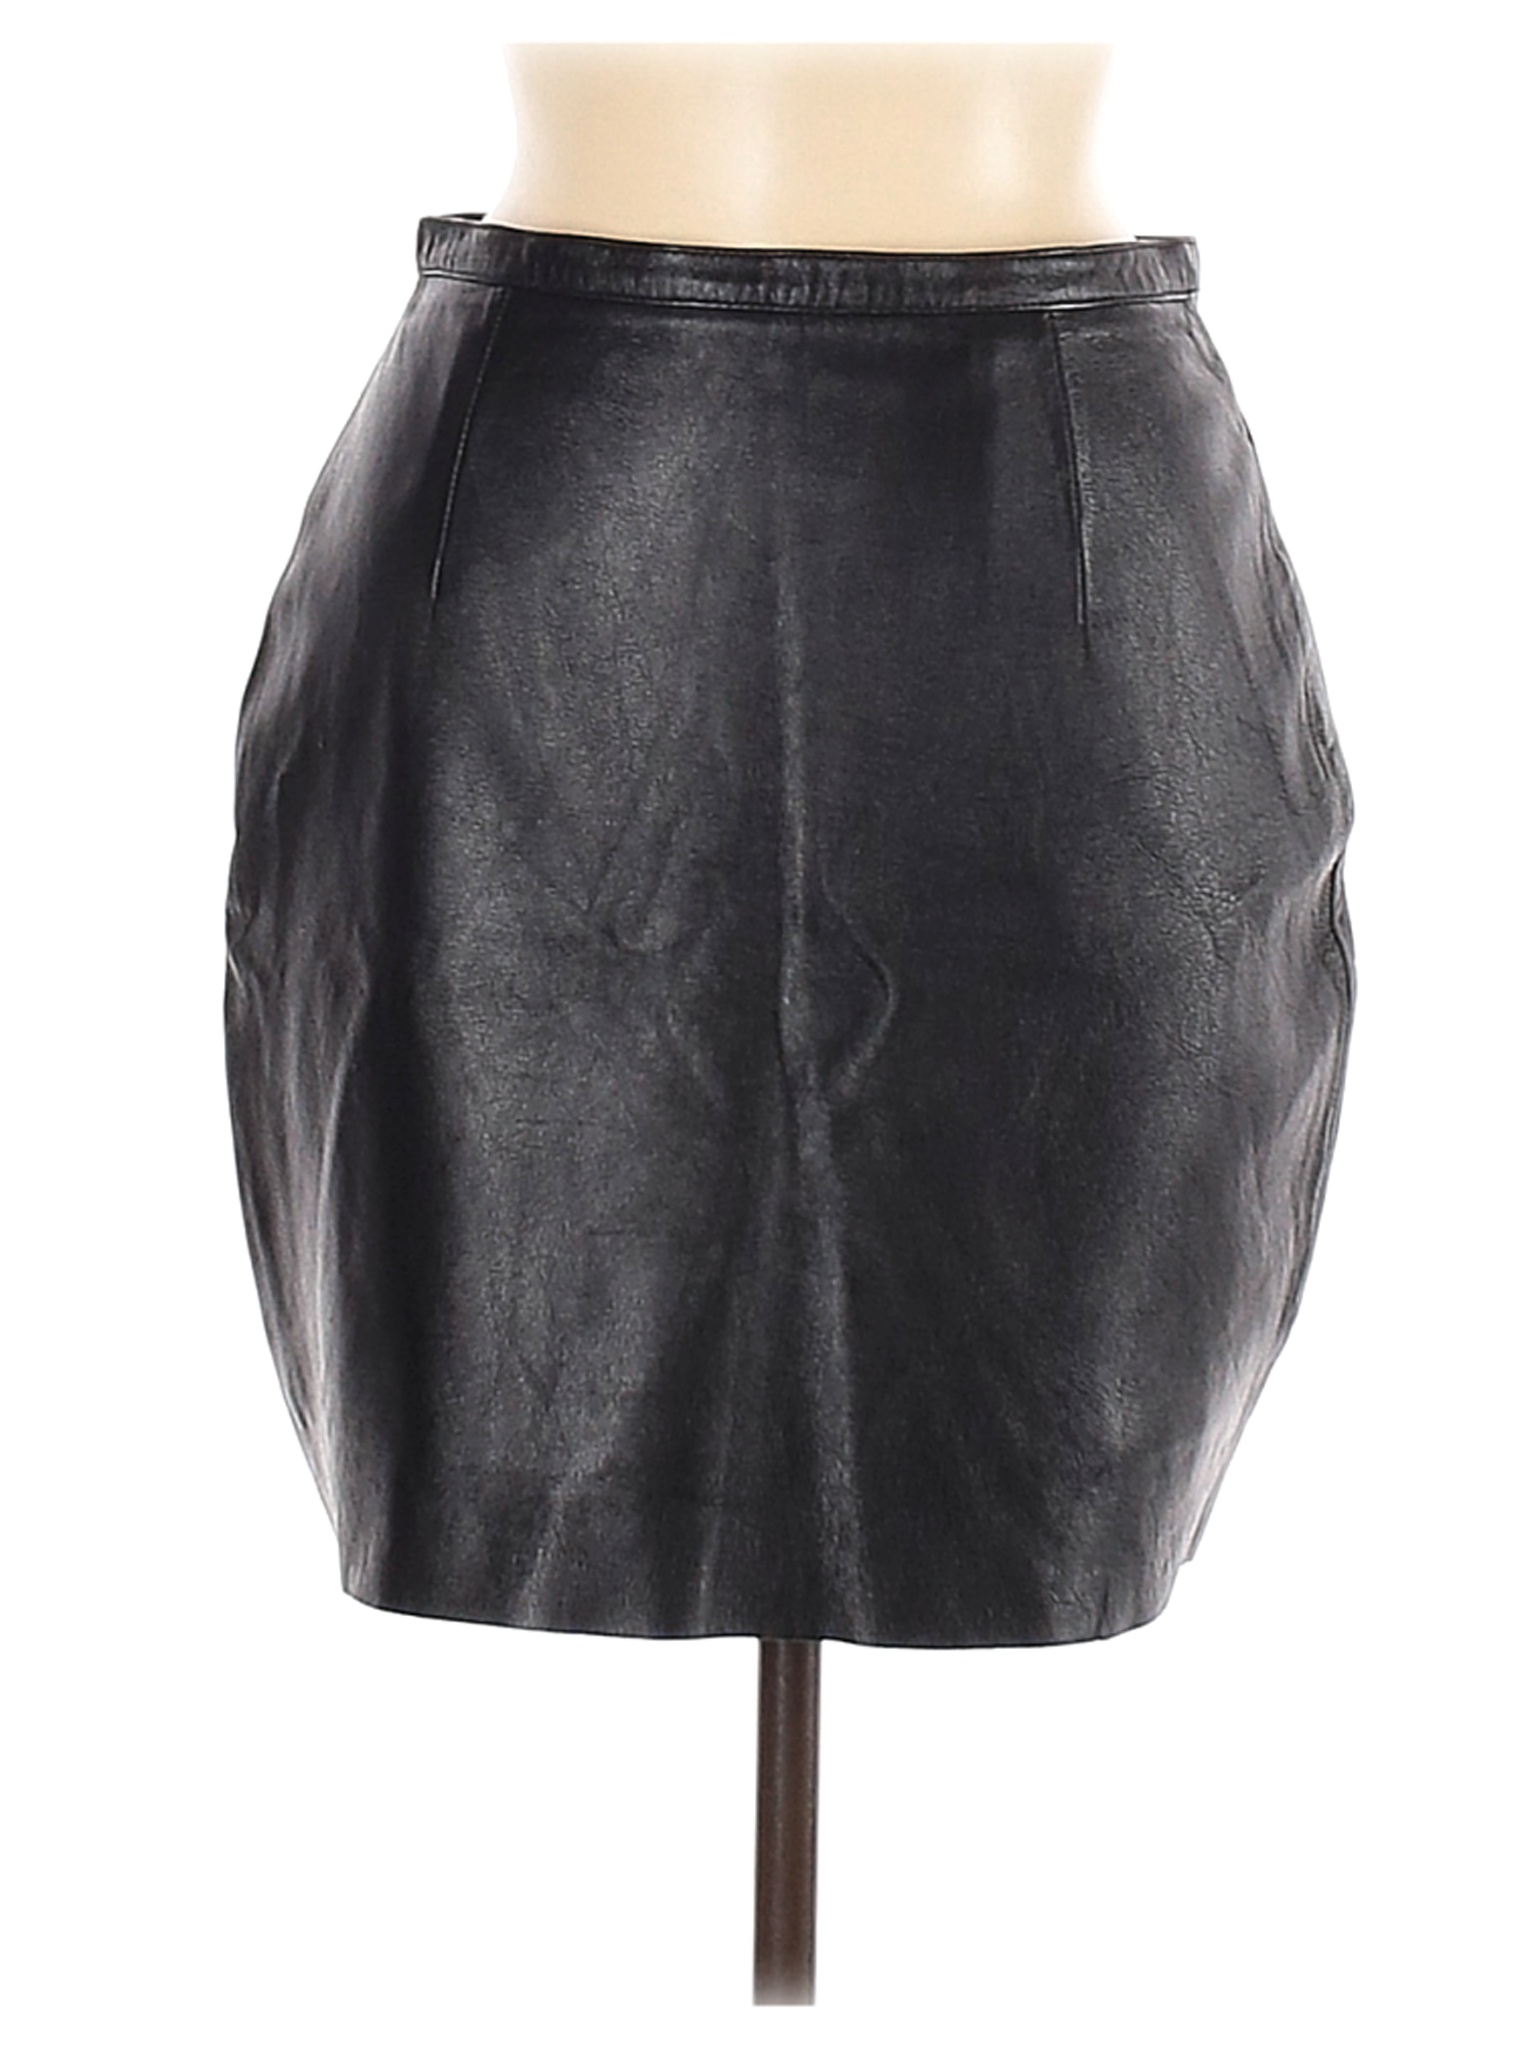 Wilsons Leather Women Black Leather Skirt 6 | eBay